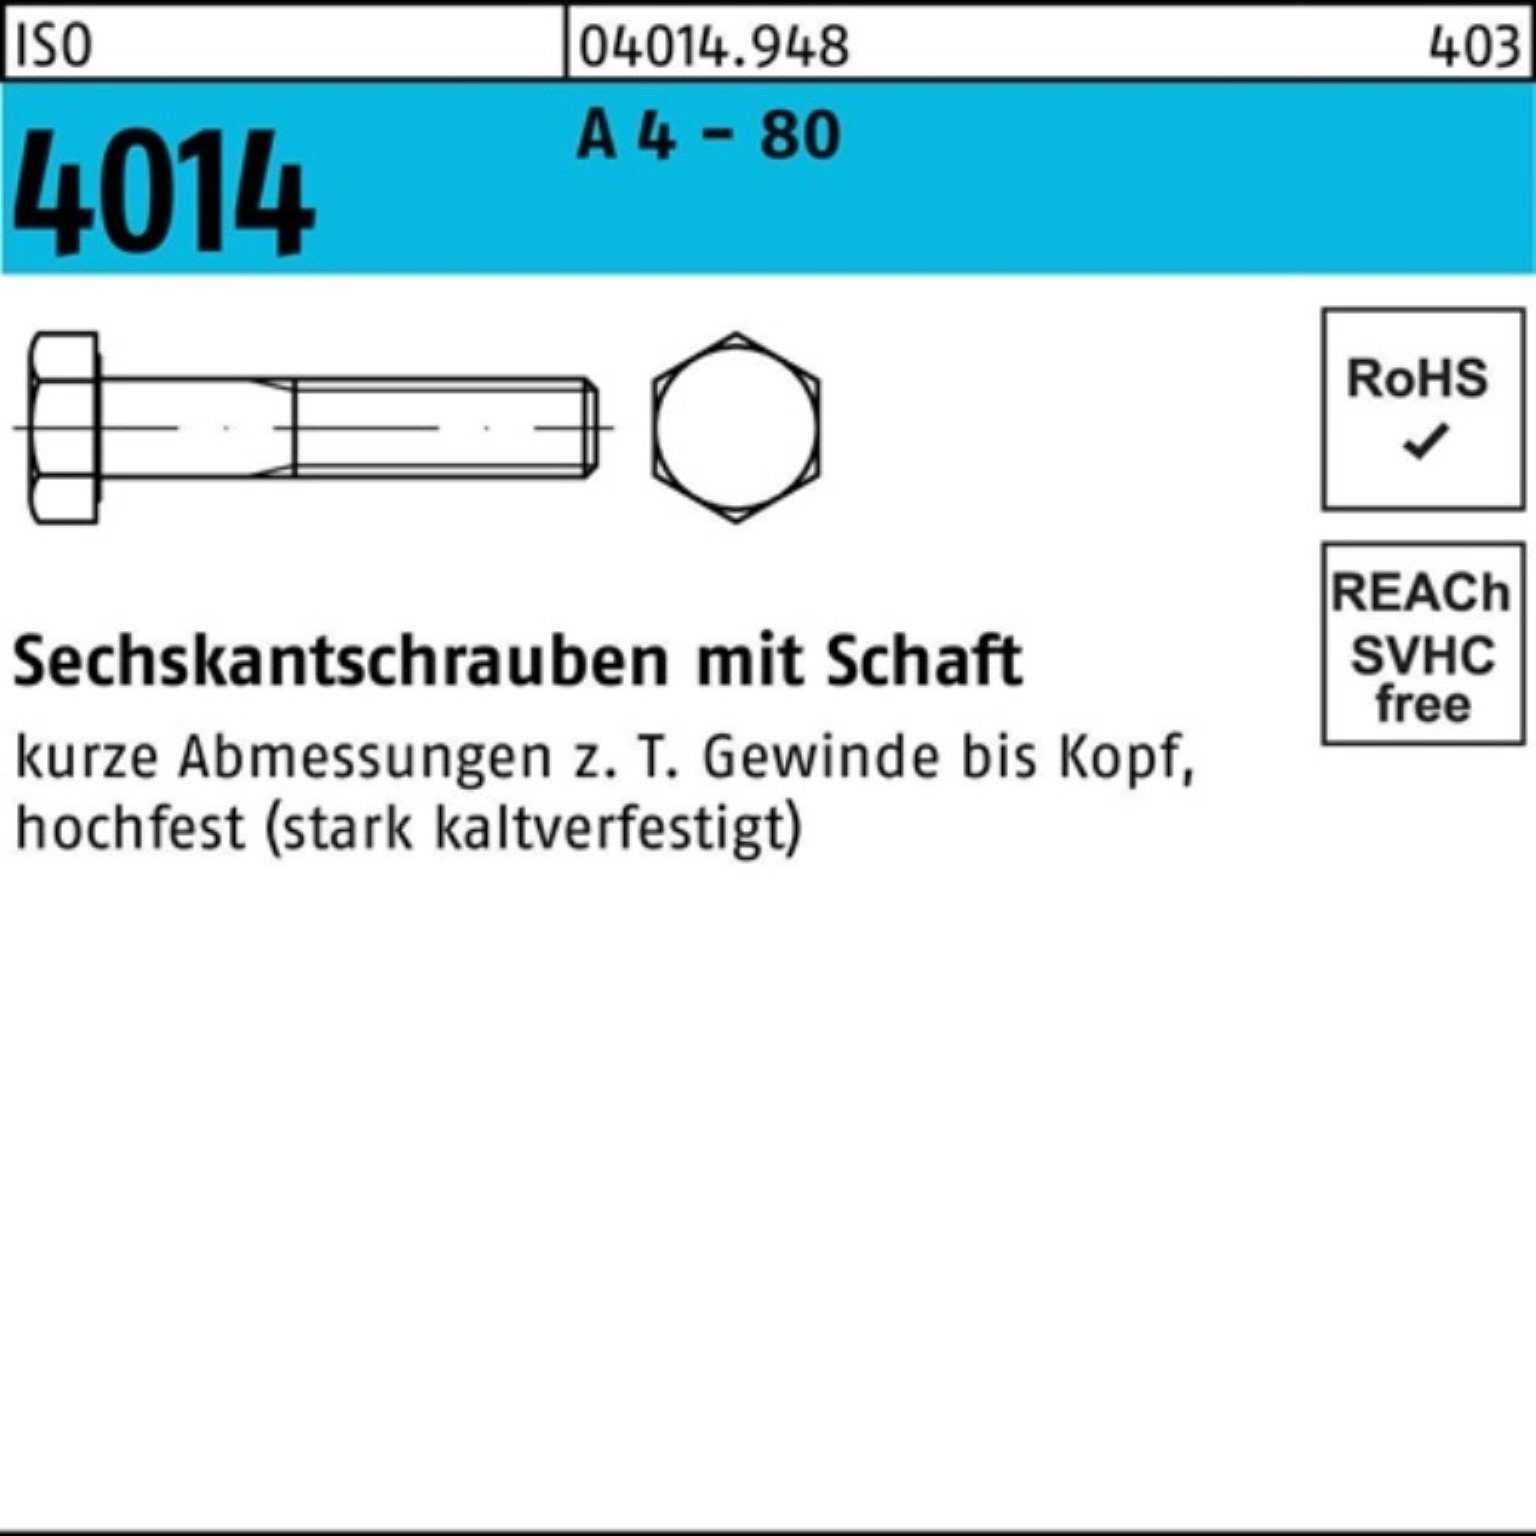 Pack Sechskantschraube Bufab Stüc ISO - 180 Schaft M20x 4 A 80 100er Sechskantschraube 4014 1